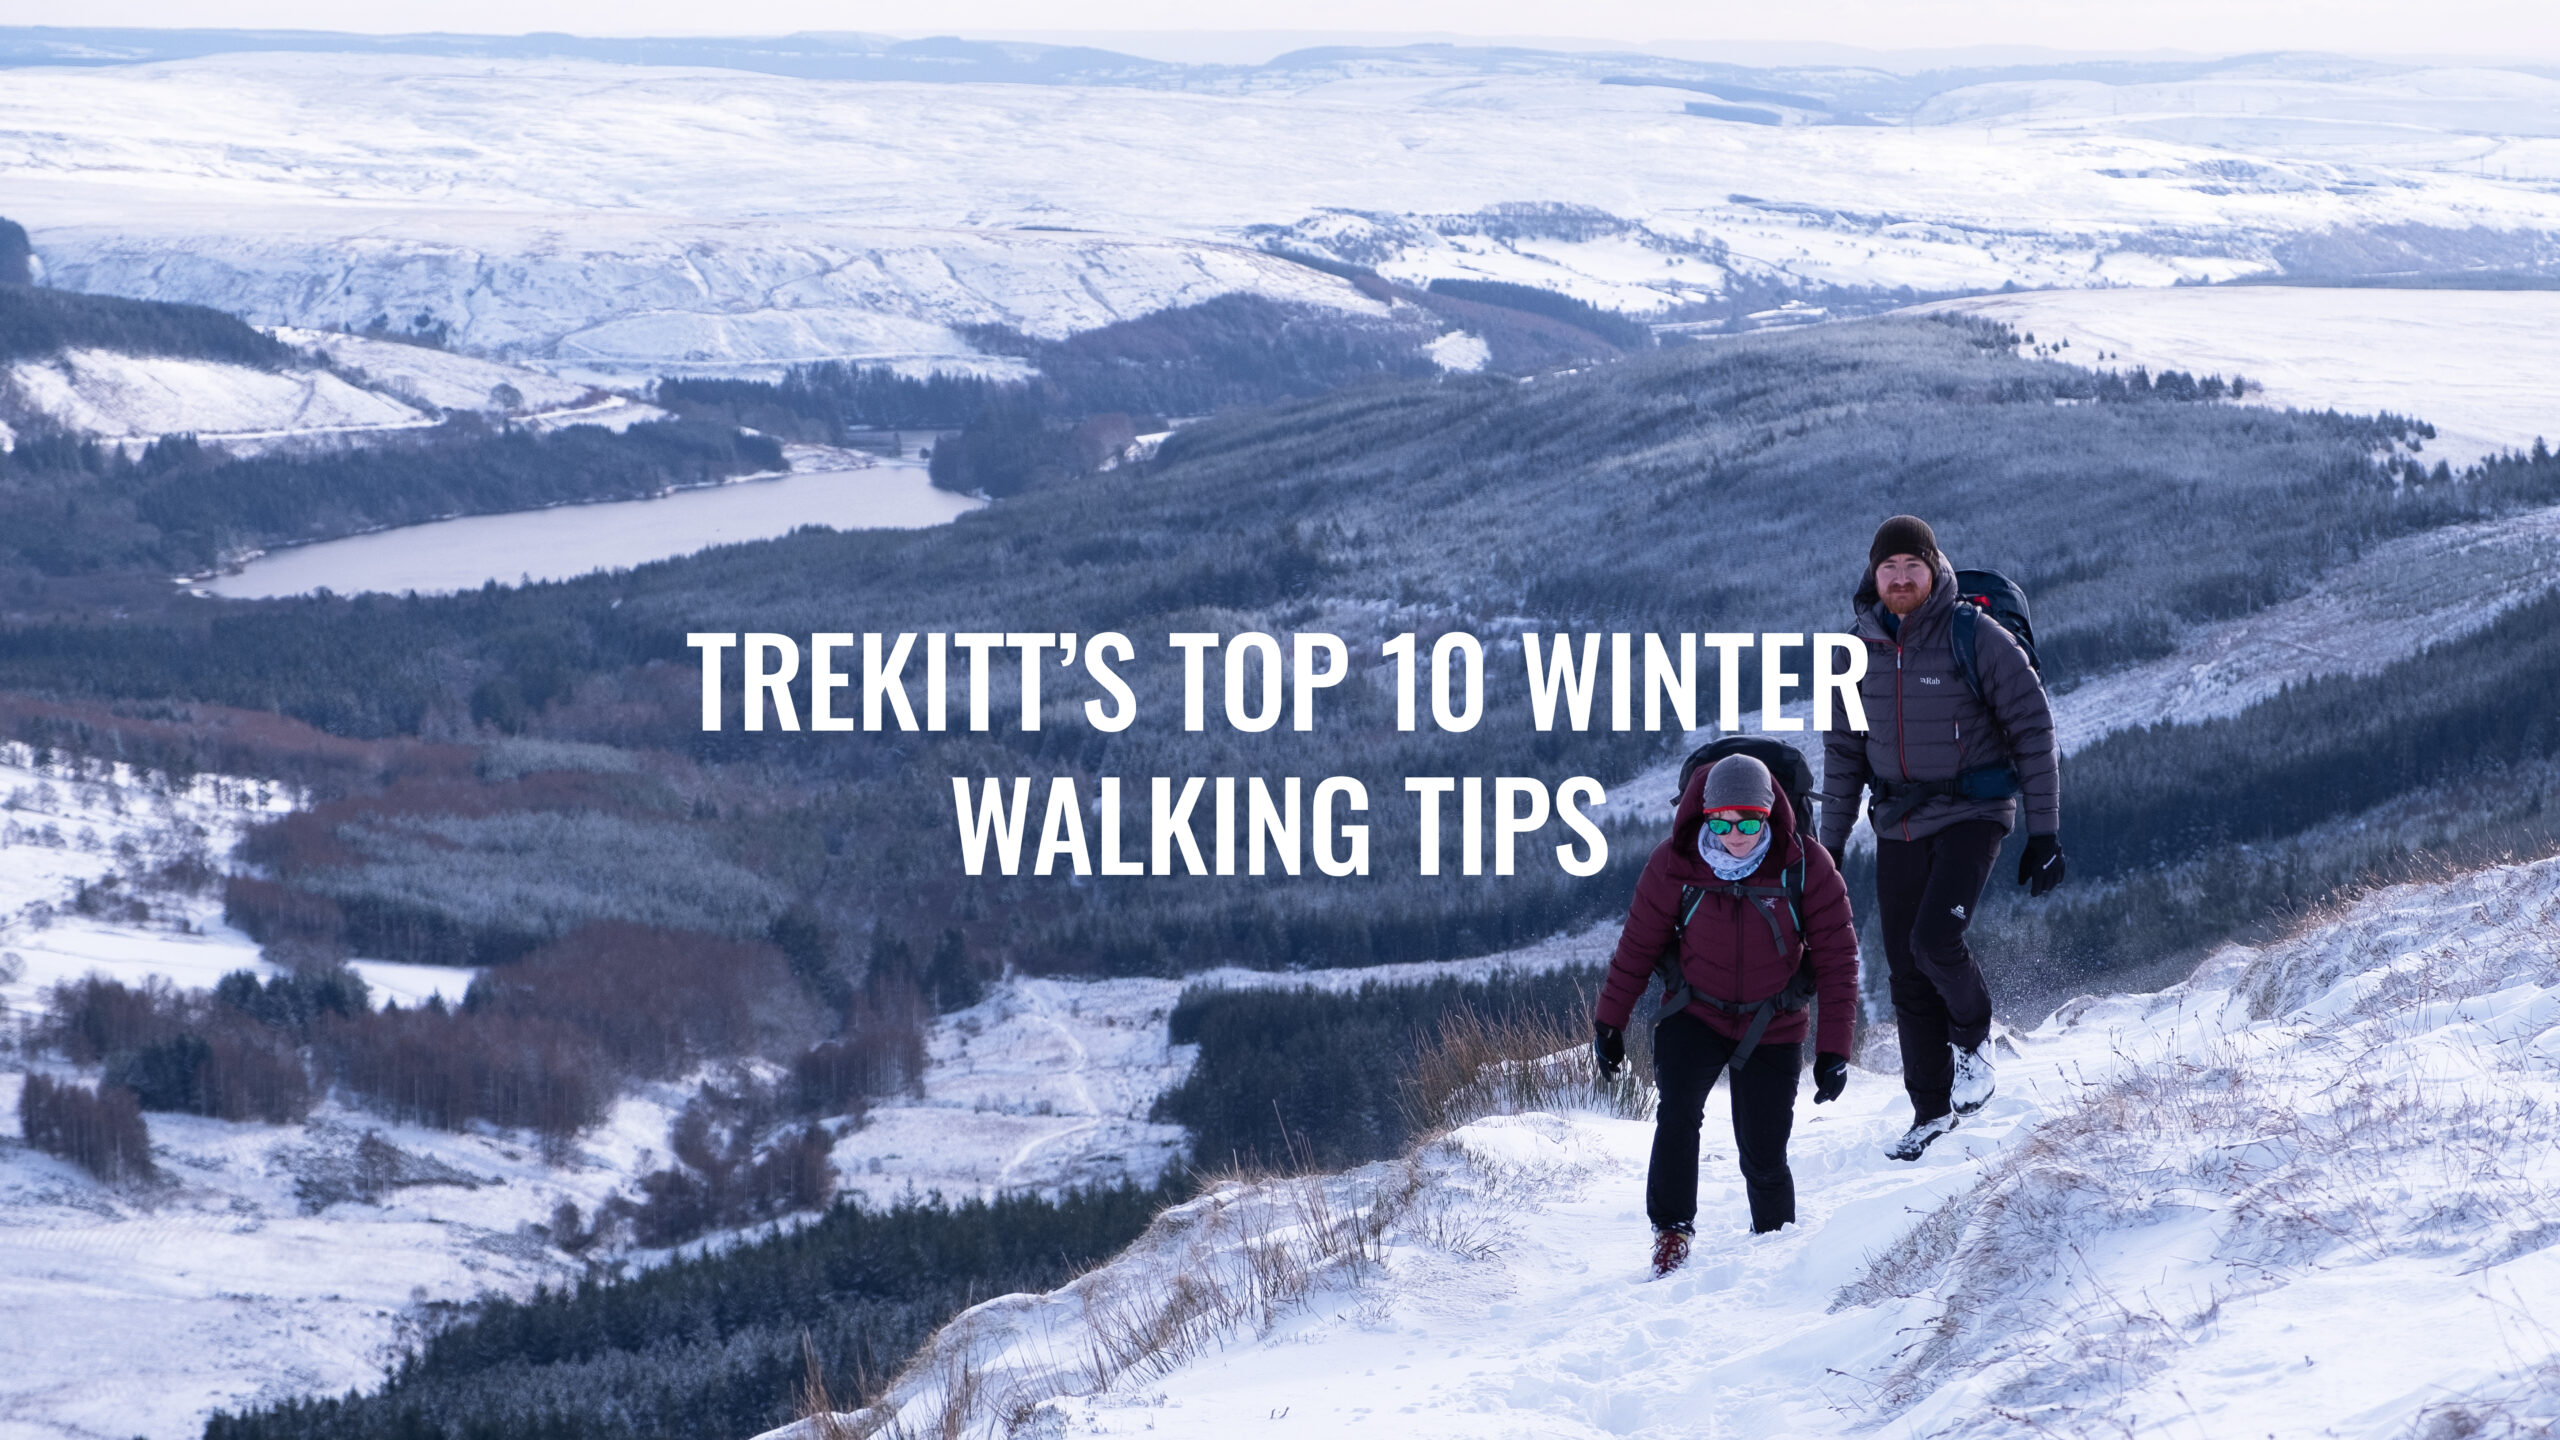 Trekitt’s Top 10 Winter Walking Tips